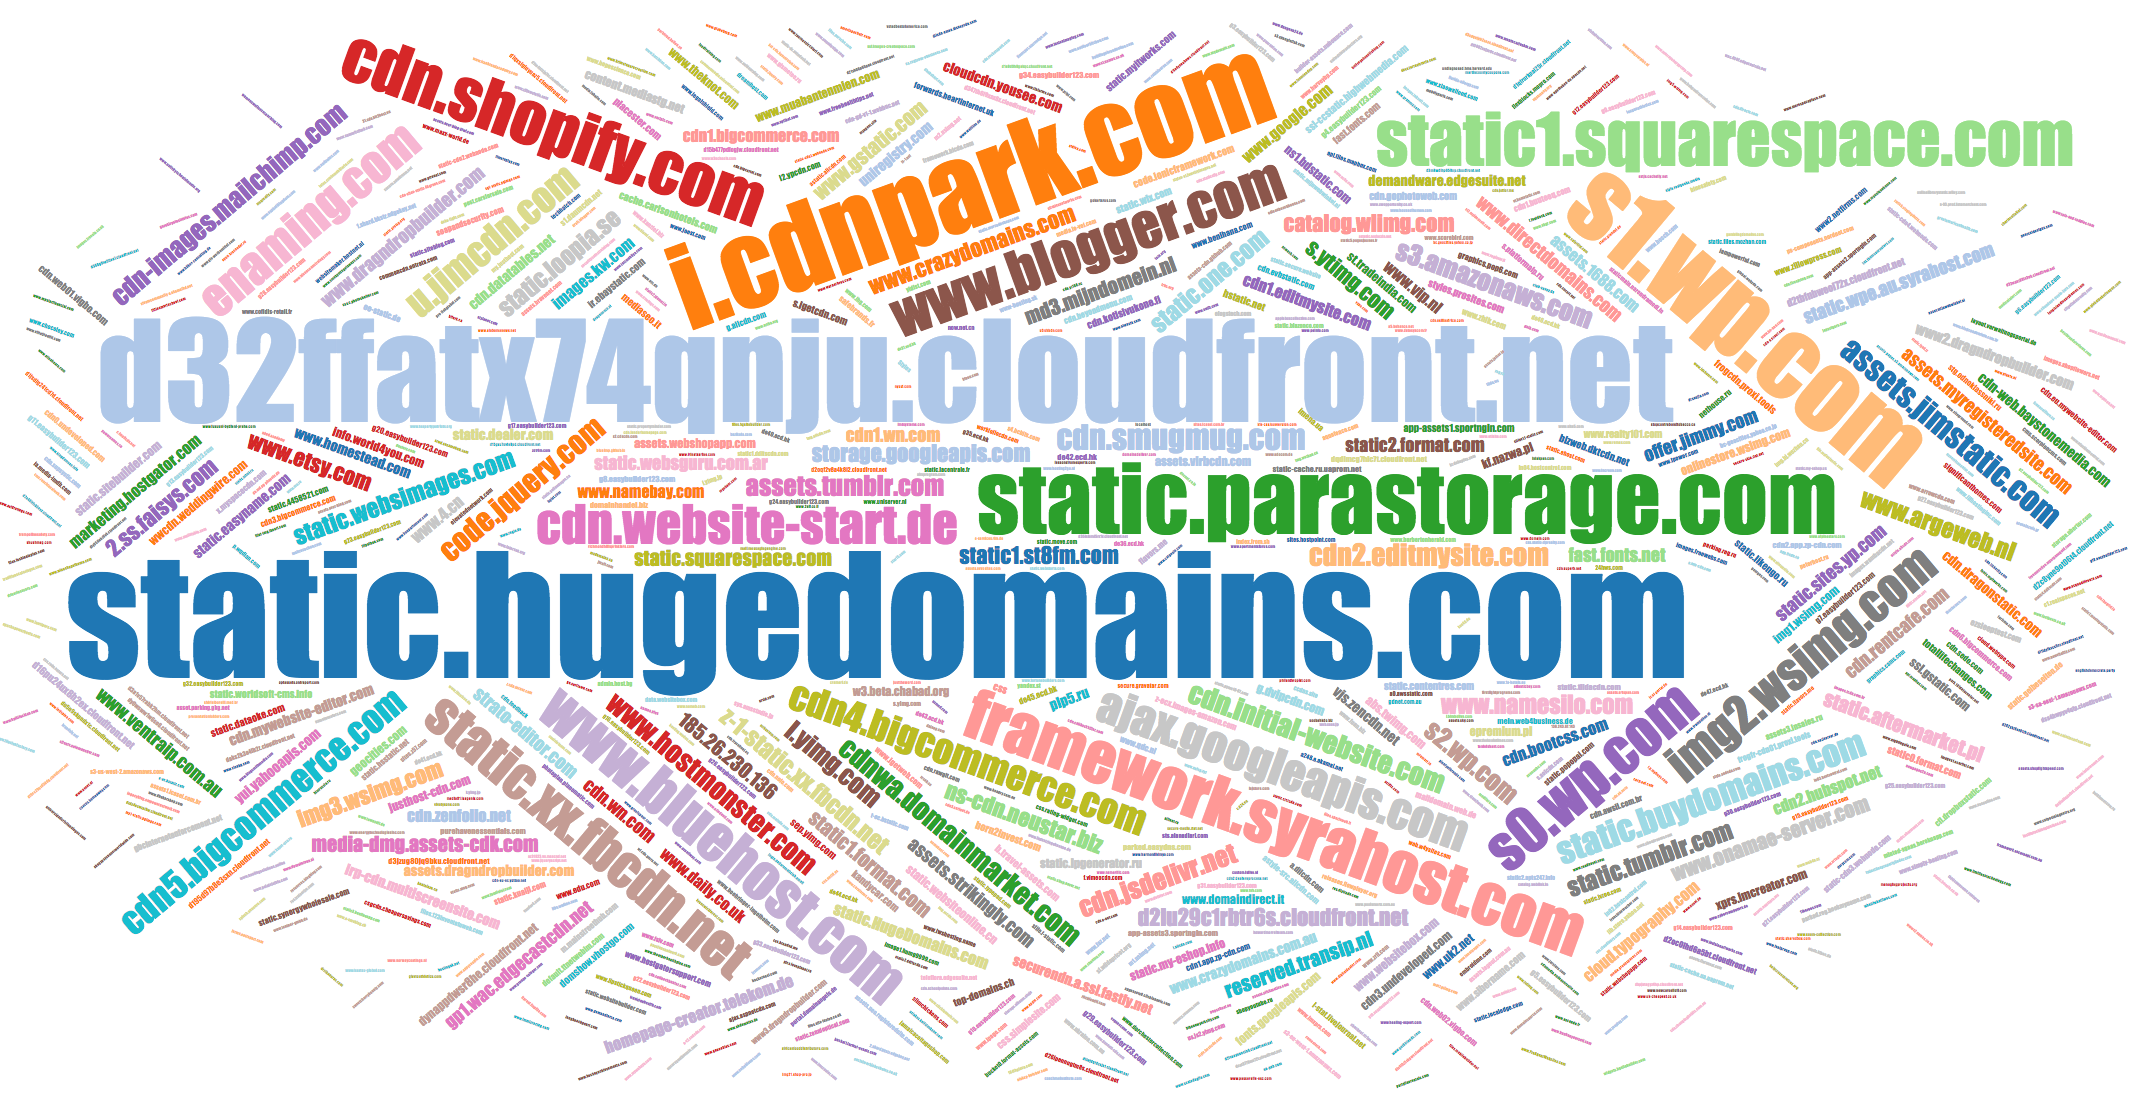 Popular names of CSS domains www.blogger.com, www.bluehost.com, etc.